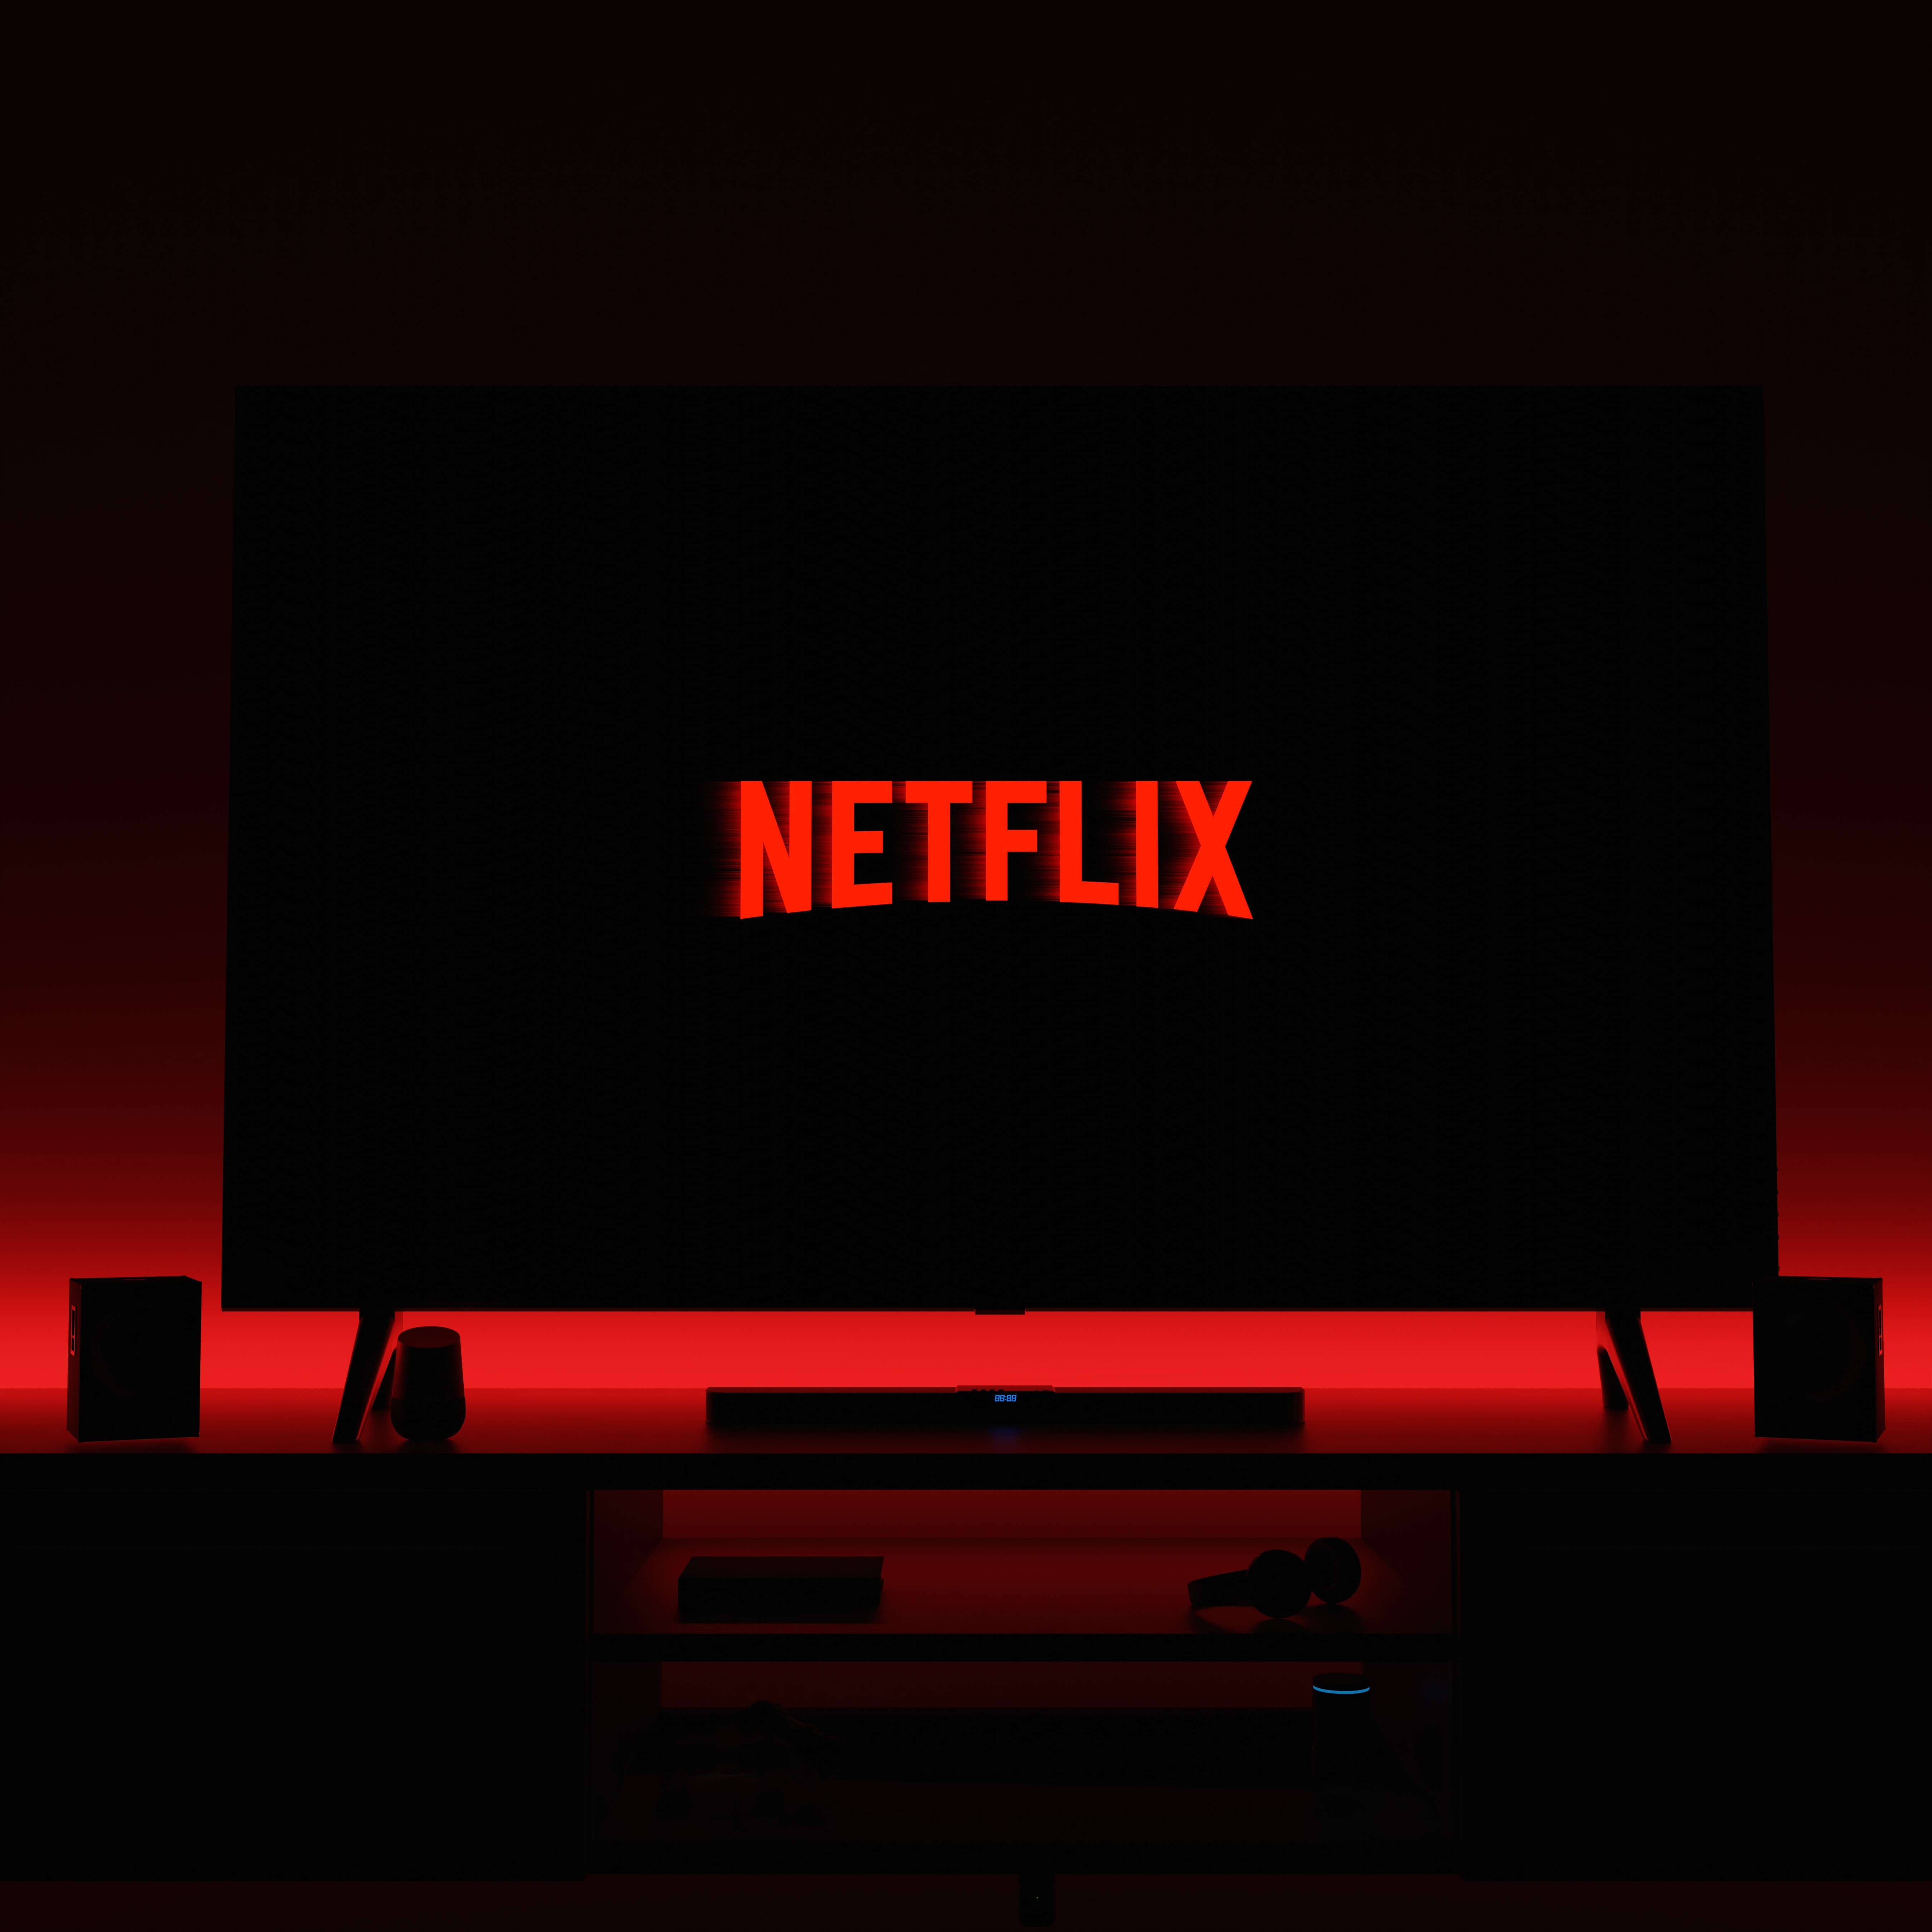 Netflixs Stranger Things - Eine erfolgreiche Marketingkampagne für eine bereits beliebte Serie